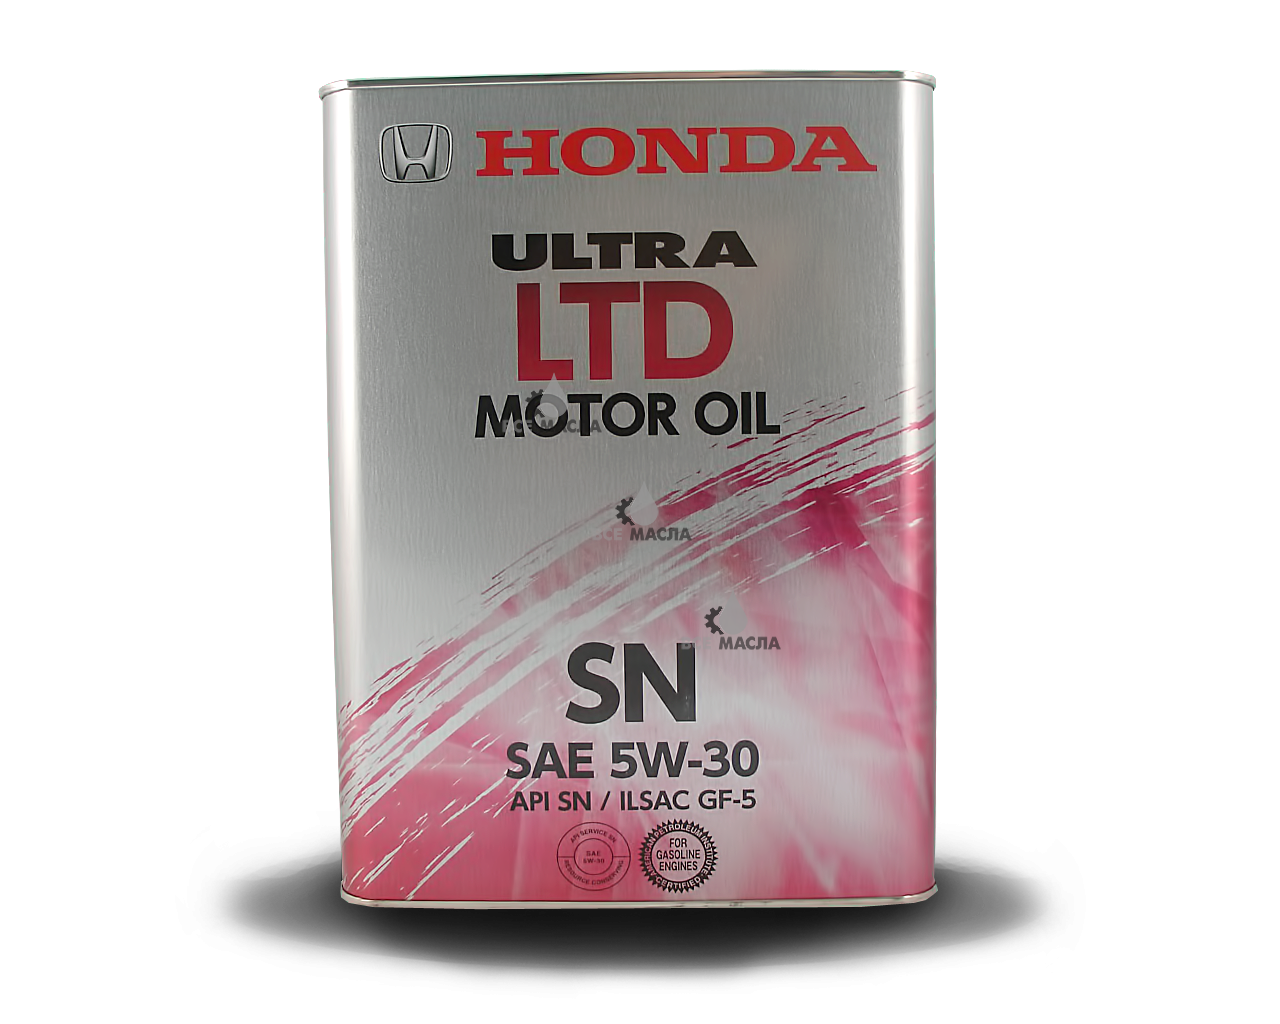 Купить моторное масло honda. Honda Ultra Ltd SN/gf 5w-30 1л. Honda Ultra Ltd 5w30. Honda Ultra Ltd 5w-30 SP 4л. Honda Ultra Ltd 5w30 SN.